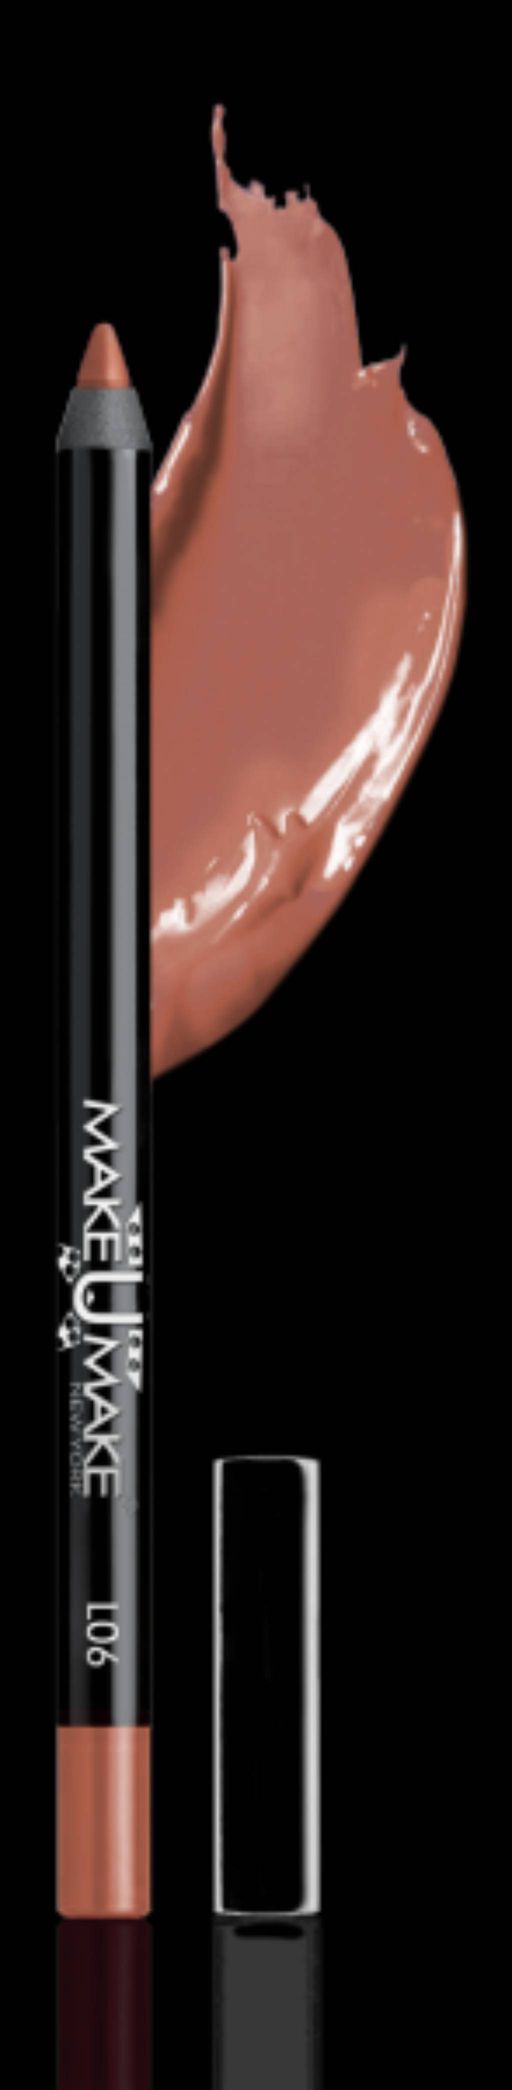 L06 - Водостойкая помада-карандаш для губ 18 Часов, 2 в 1. Цвет - КАРАМЕЛЬ (CARAMEL)